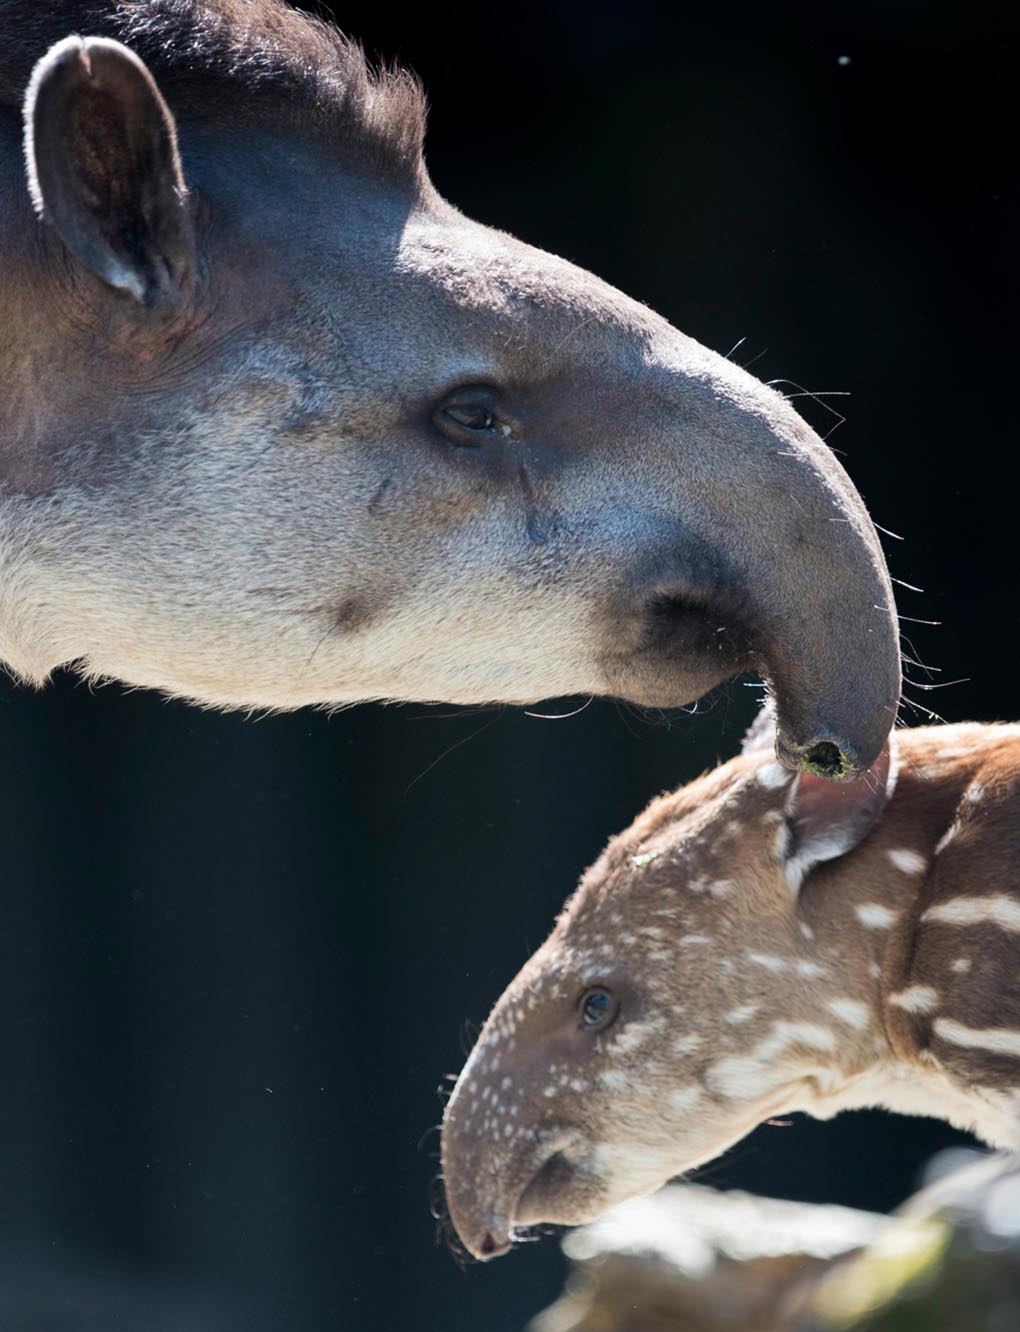 Молодой тапир родился 30 апреля. Он стоит около своей матери на территории зоопарка в Цюрихе, Швейцария, 21 мая. (ENNIO Leanza/EPA)